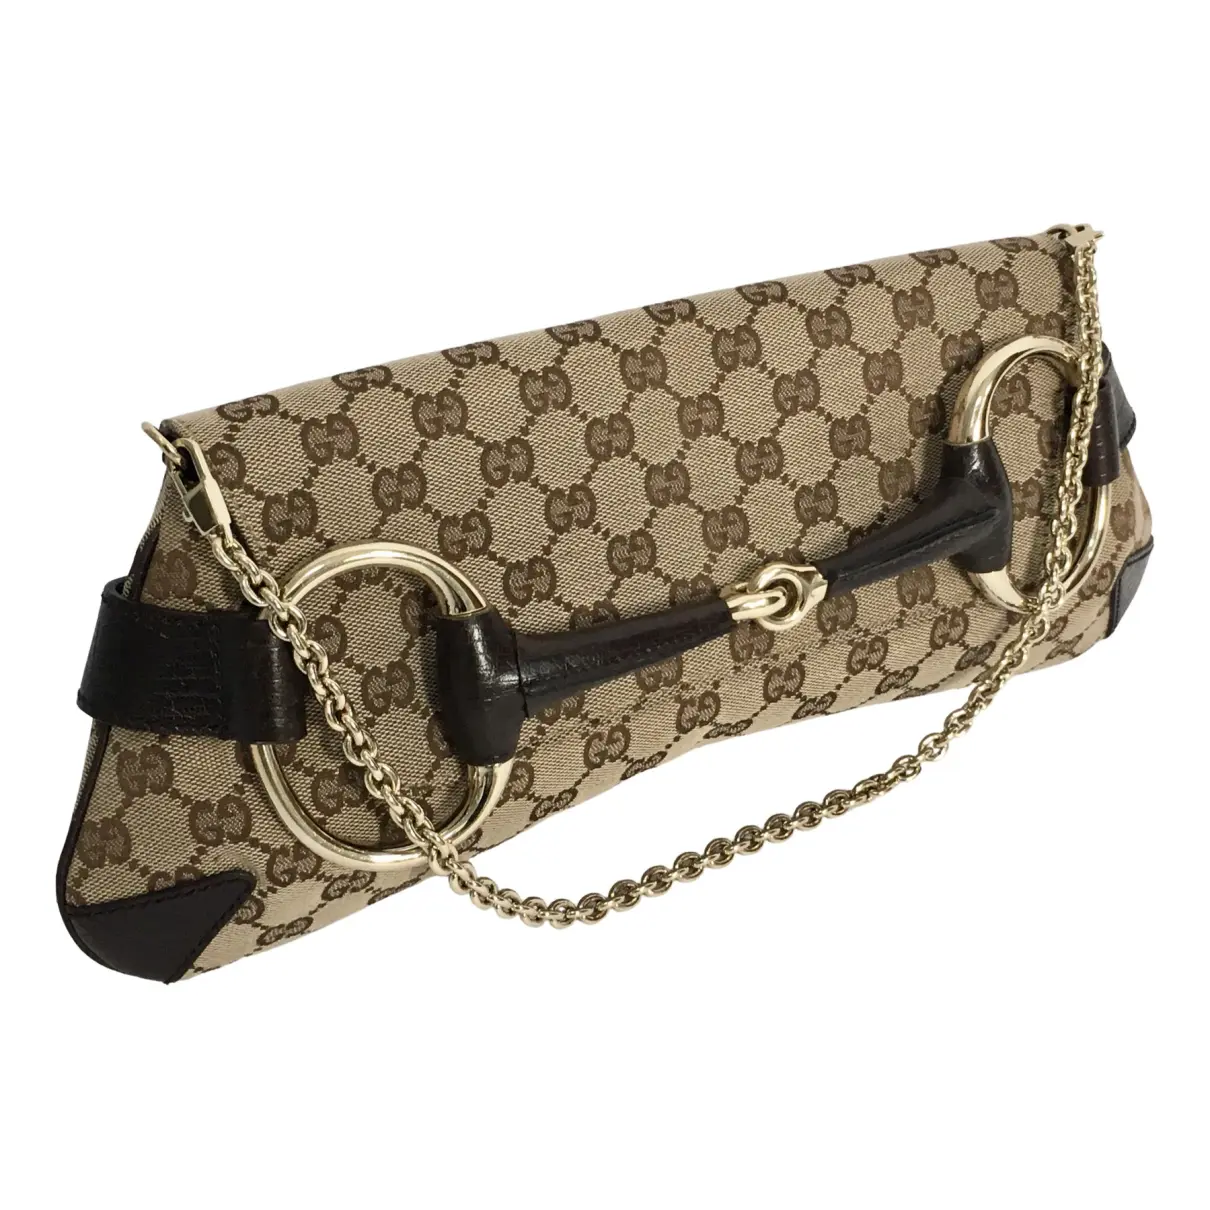 Horsebit 1955 cloth handbag Gucci